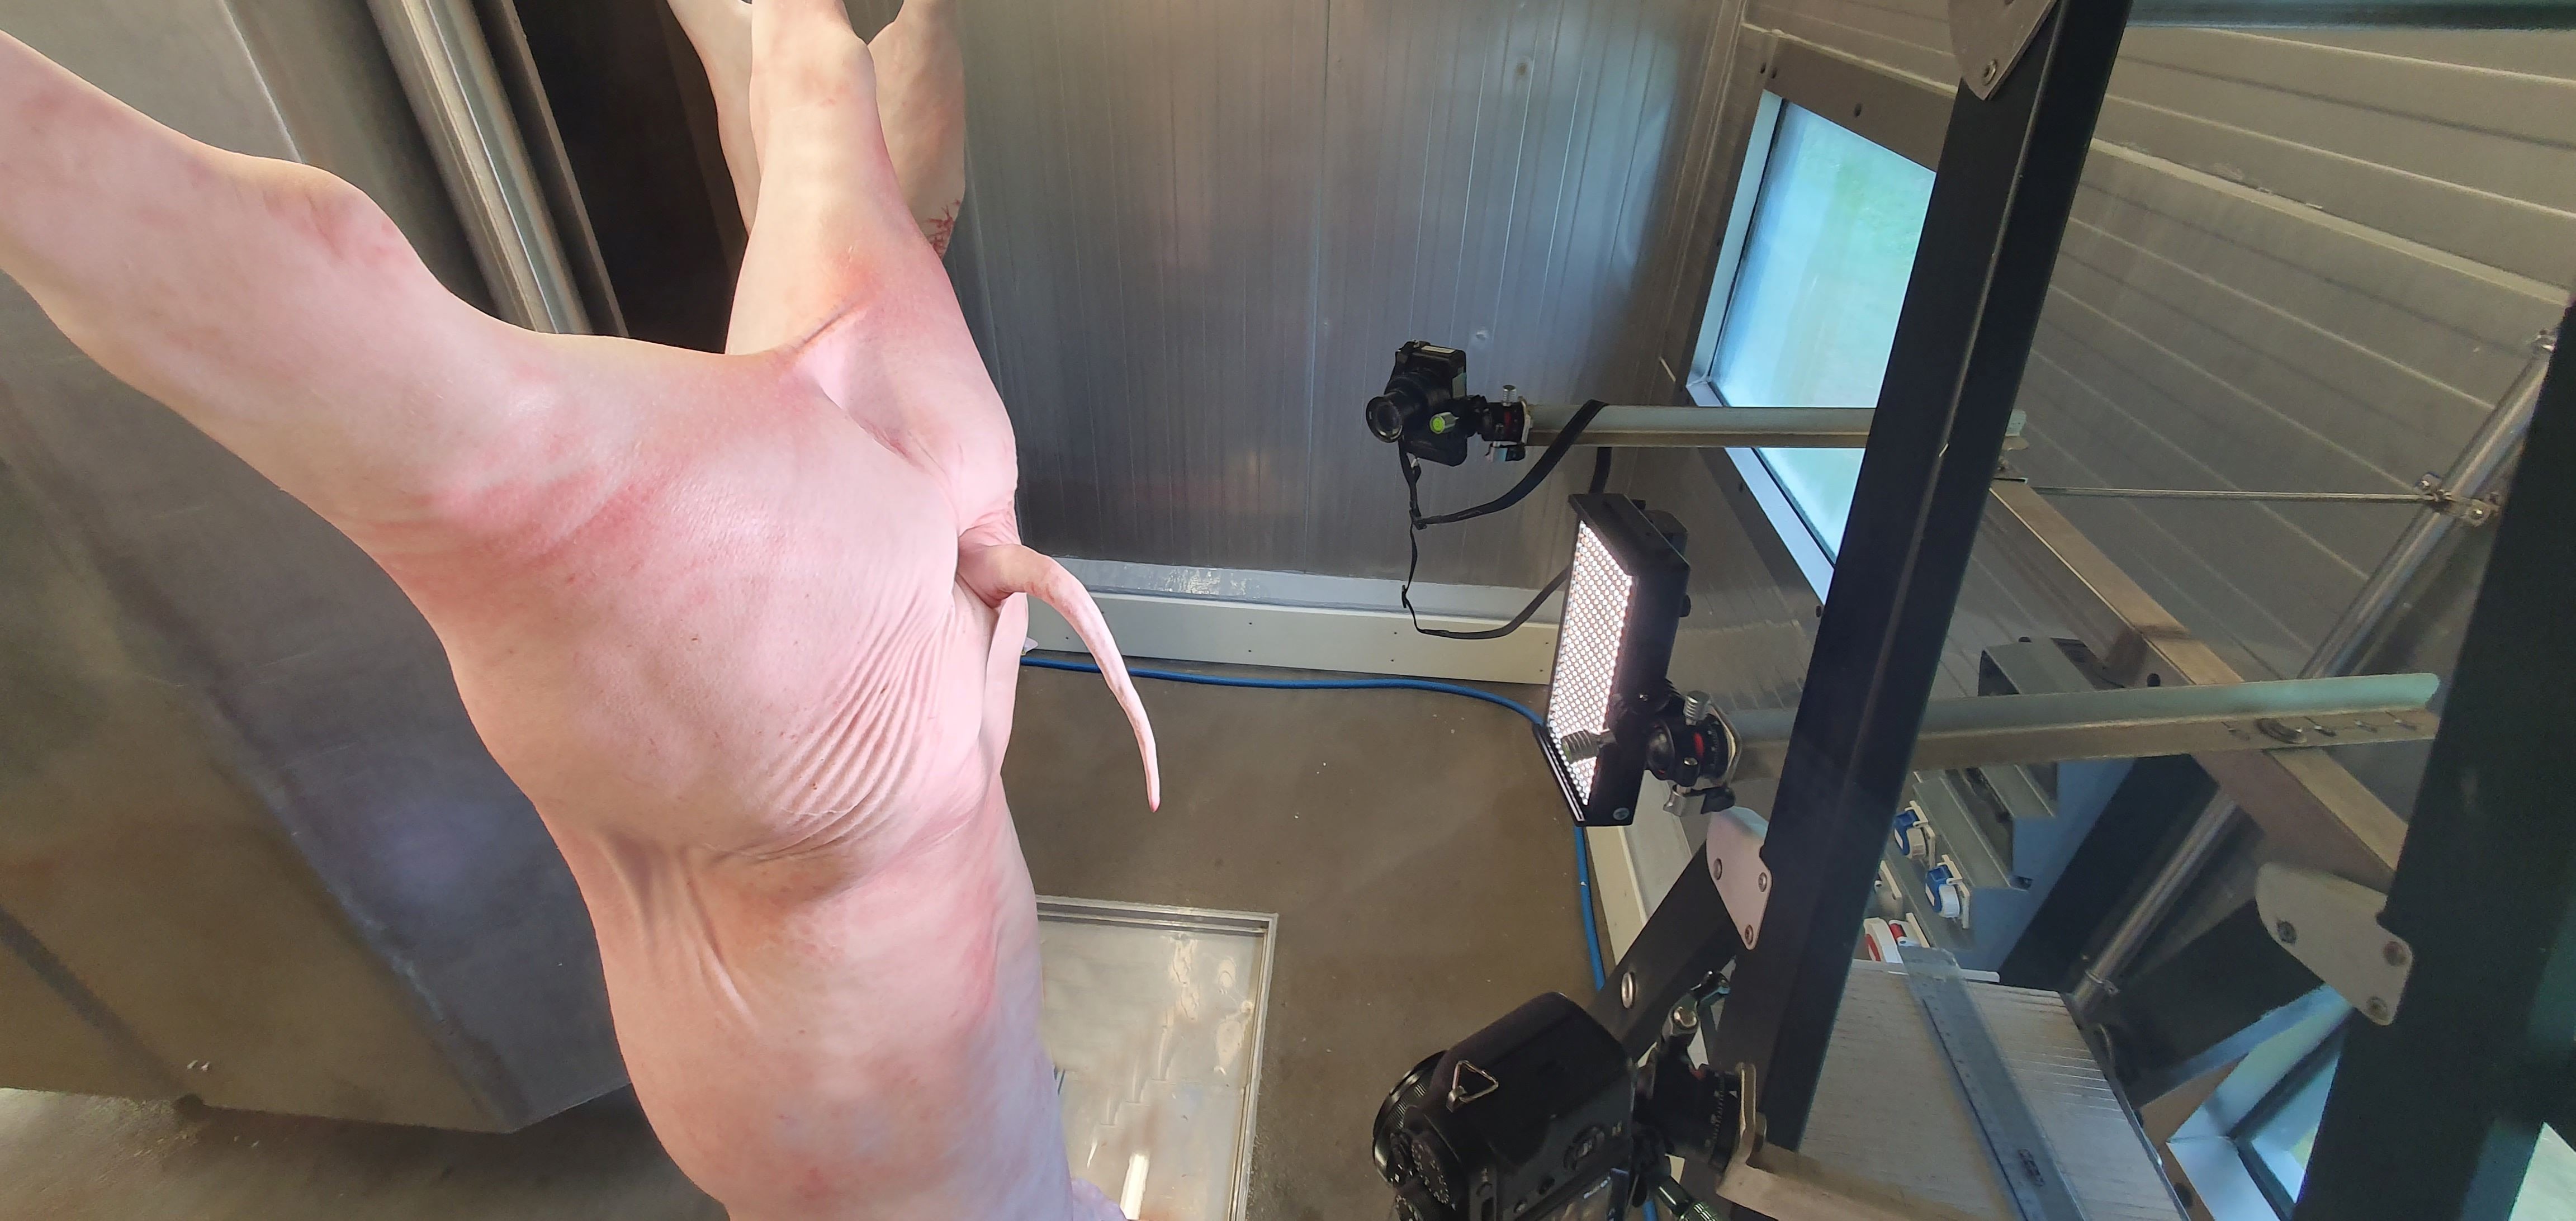 Das Bild zeigt ein geschlachtetes Schwein, das in einem Schlachthaus an einem Förderband aufgehängt ist. Zu sehen sind außerdem mehrere Kameras und eine Lichtquelle, die Fotos des Schlachtkörpers aufnehmen.